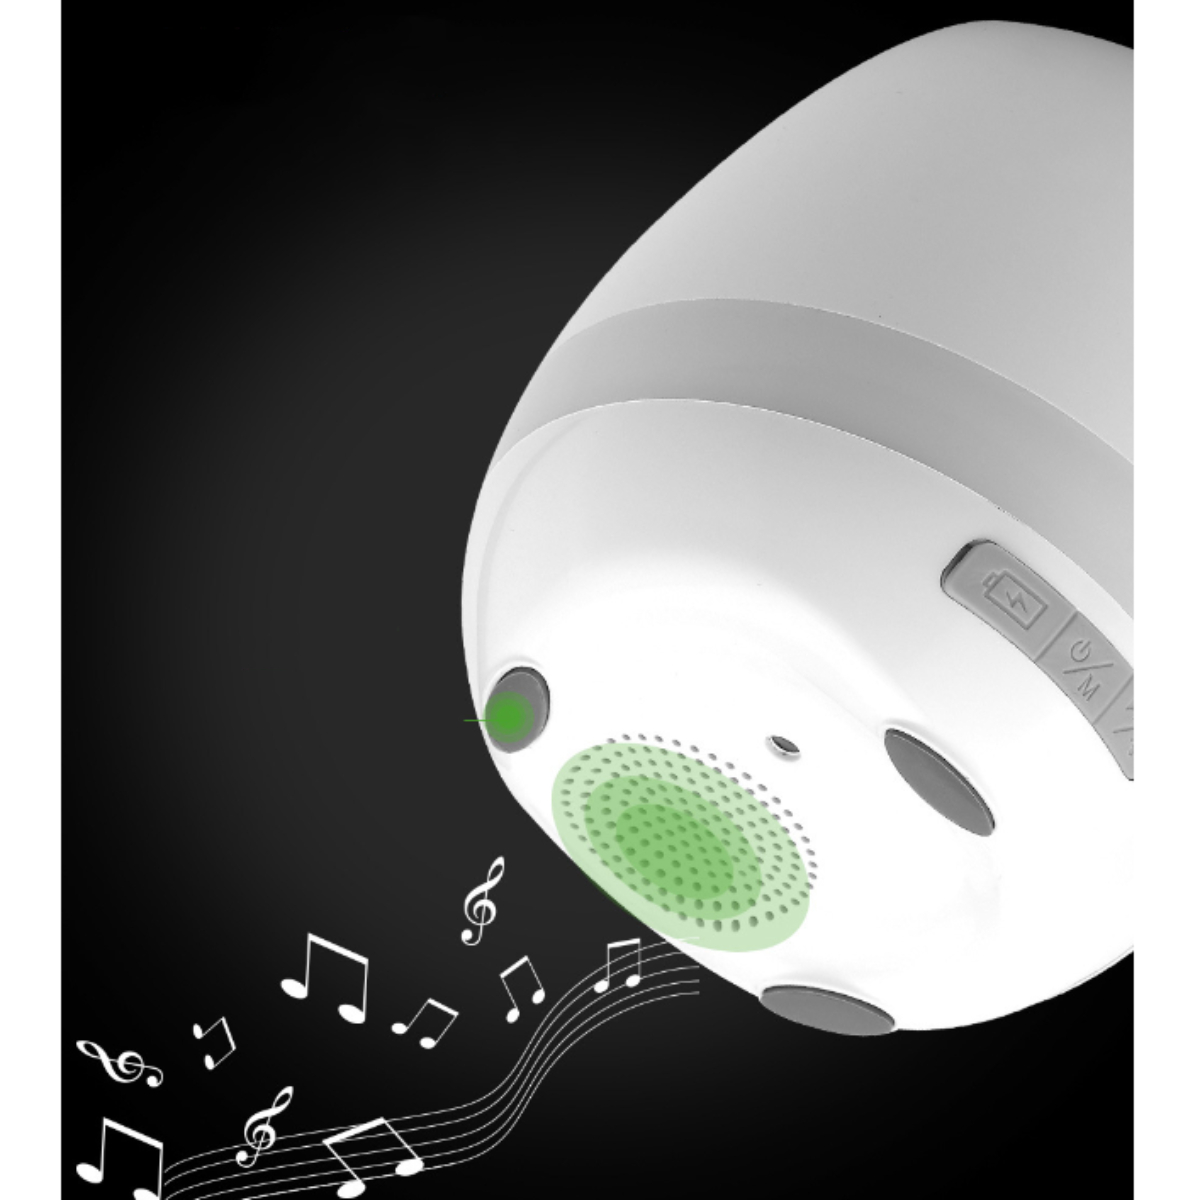 ENBAOXIN Bluetooth Blumentopf, Lautsprecher-Smart Nachtlicht Rosa 7 Modus Bluetooth-Lautsprecher, Musik Farben